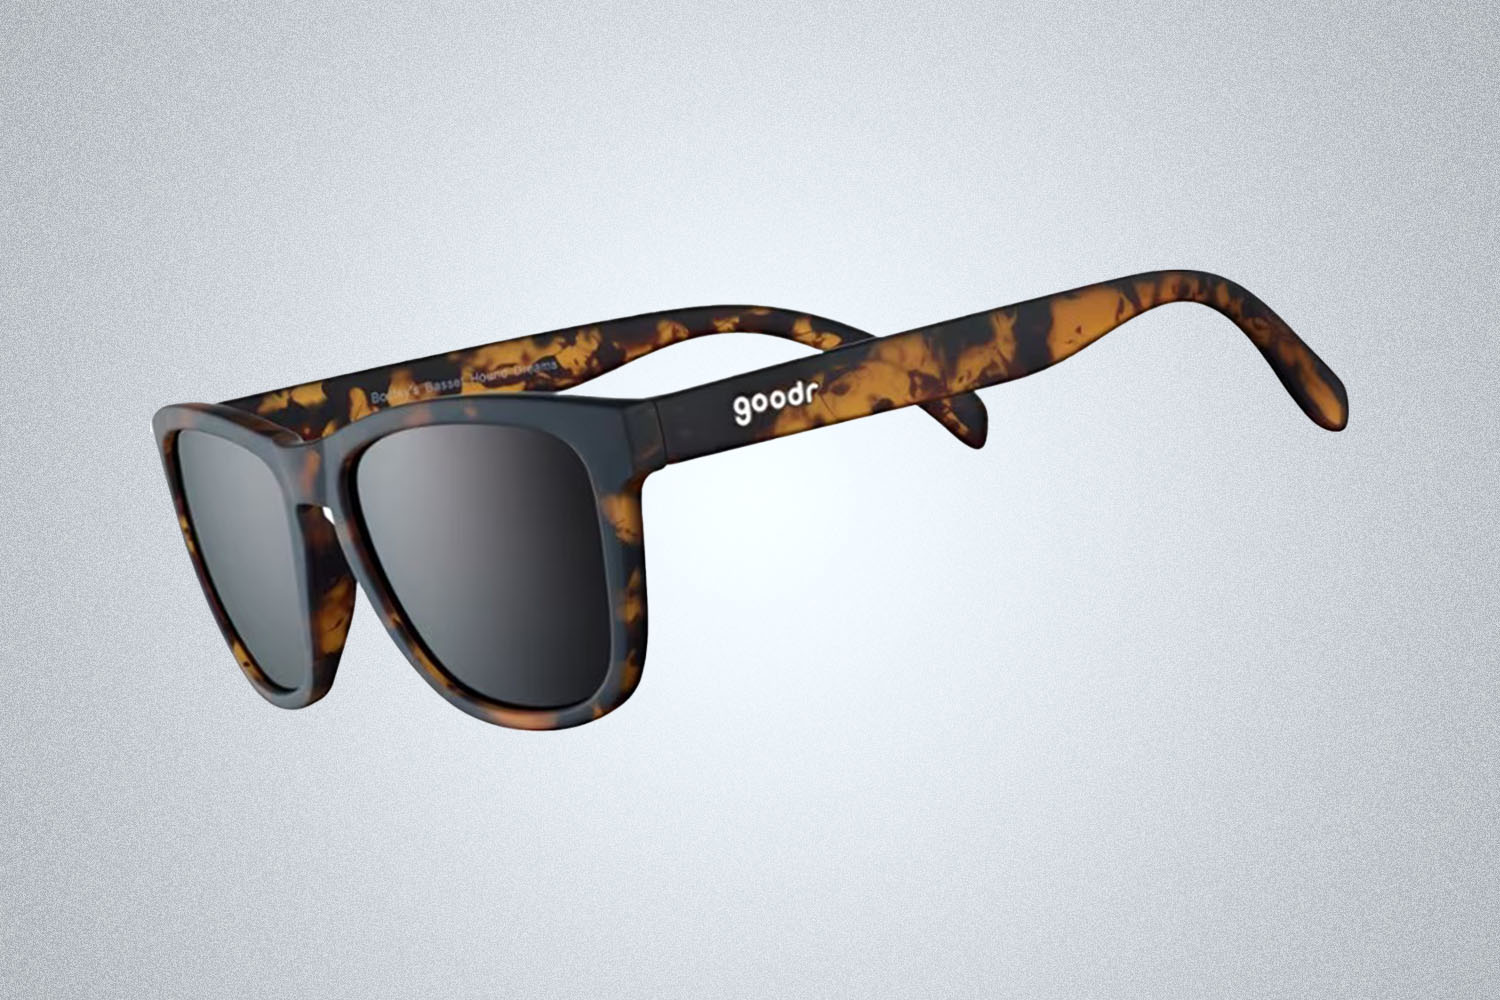 The Anti-Slip Sunglasses: Goodr OG Running Sunglasses